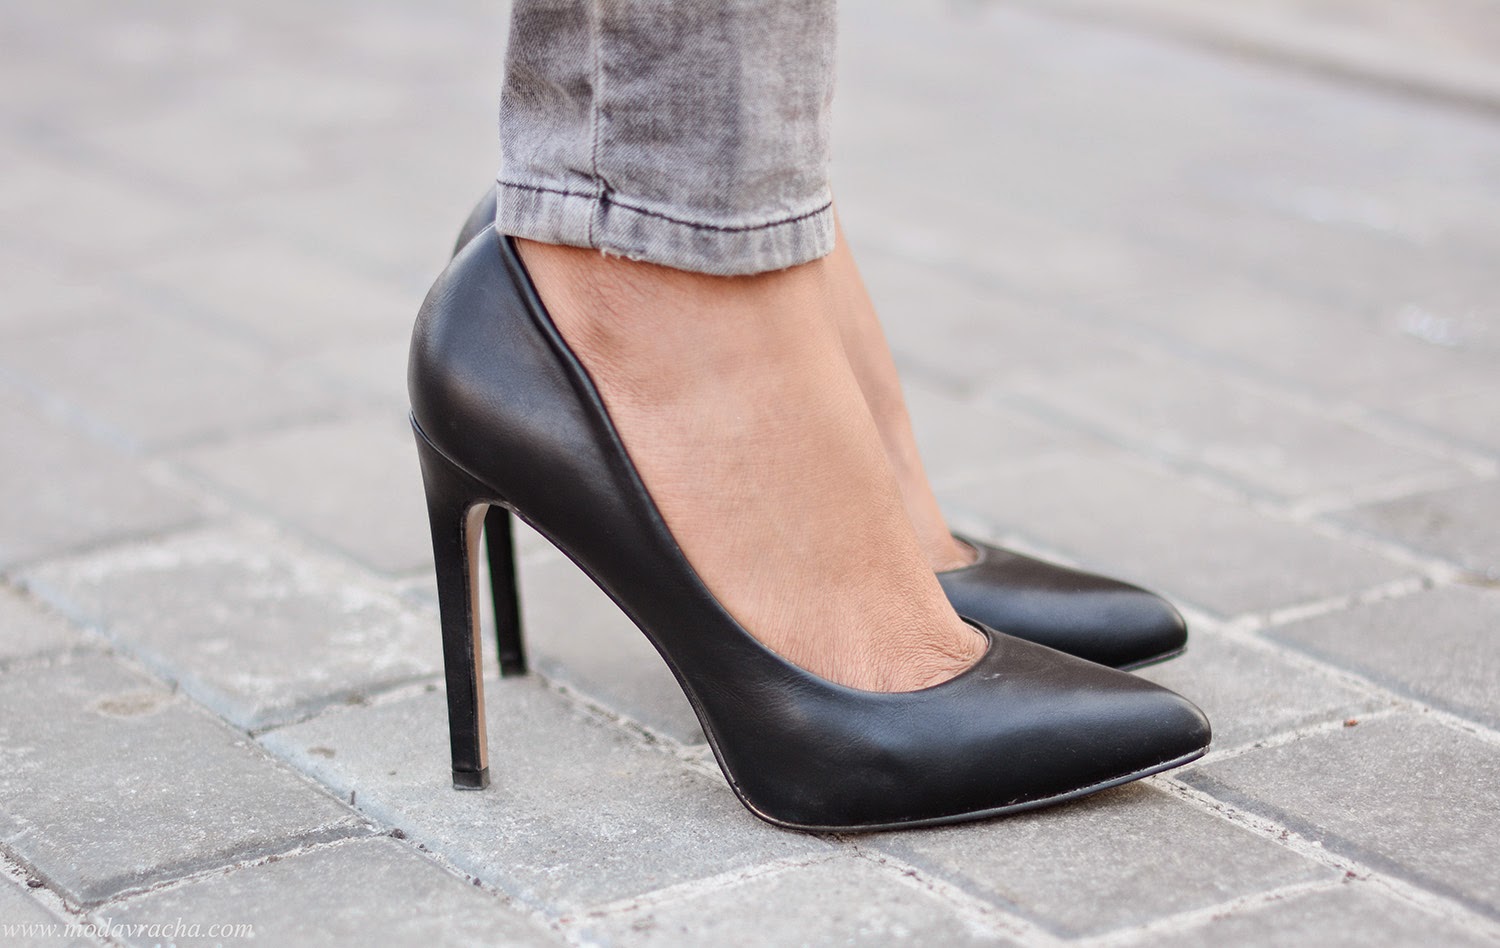 Black court heels